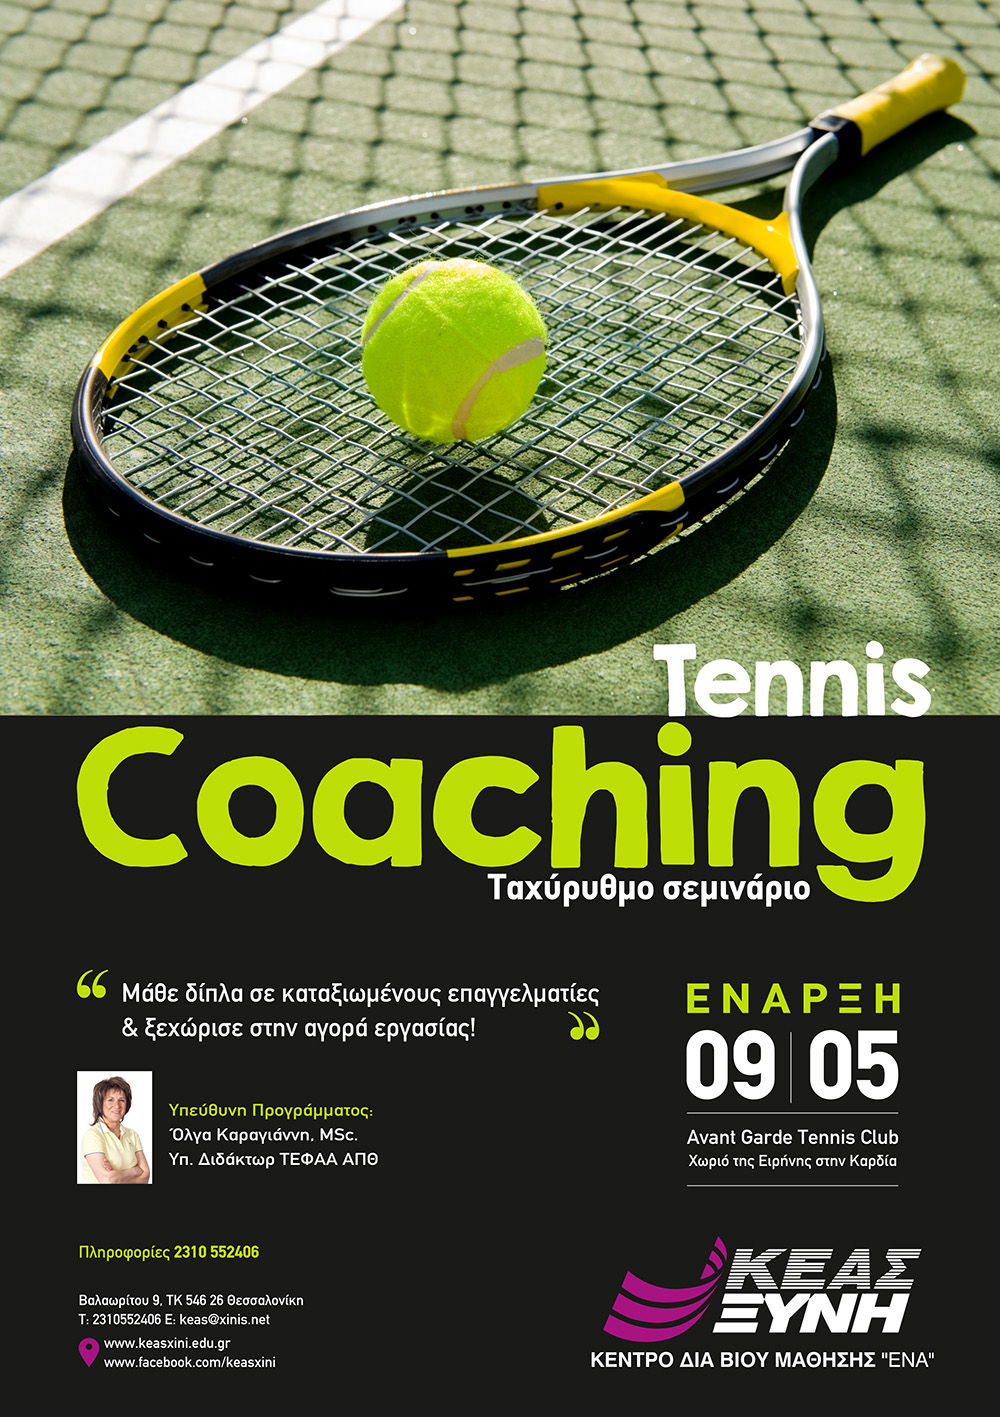 ΚΕΑΣ ΞΥΝΗ: Tennis Coaching! Ταχύρυθμο εξειδικευμένο πρόγραμμα με την υπογραφή της Όλγας Καραγιάννη